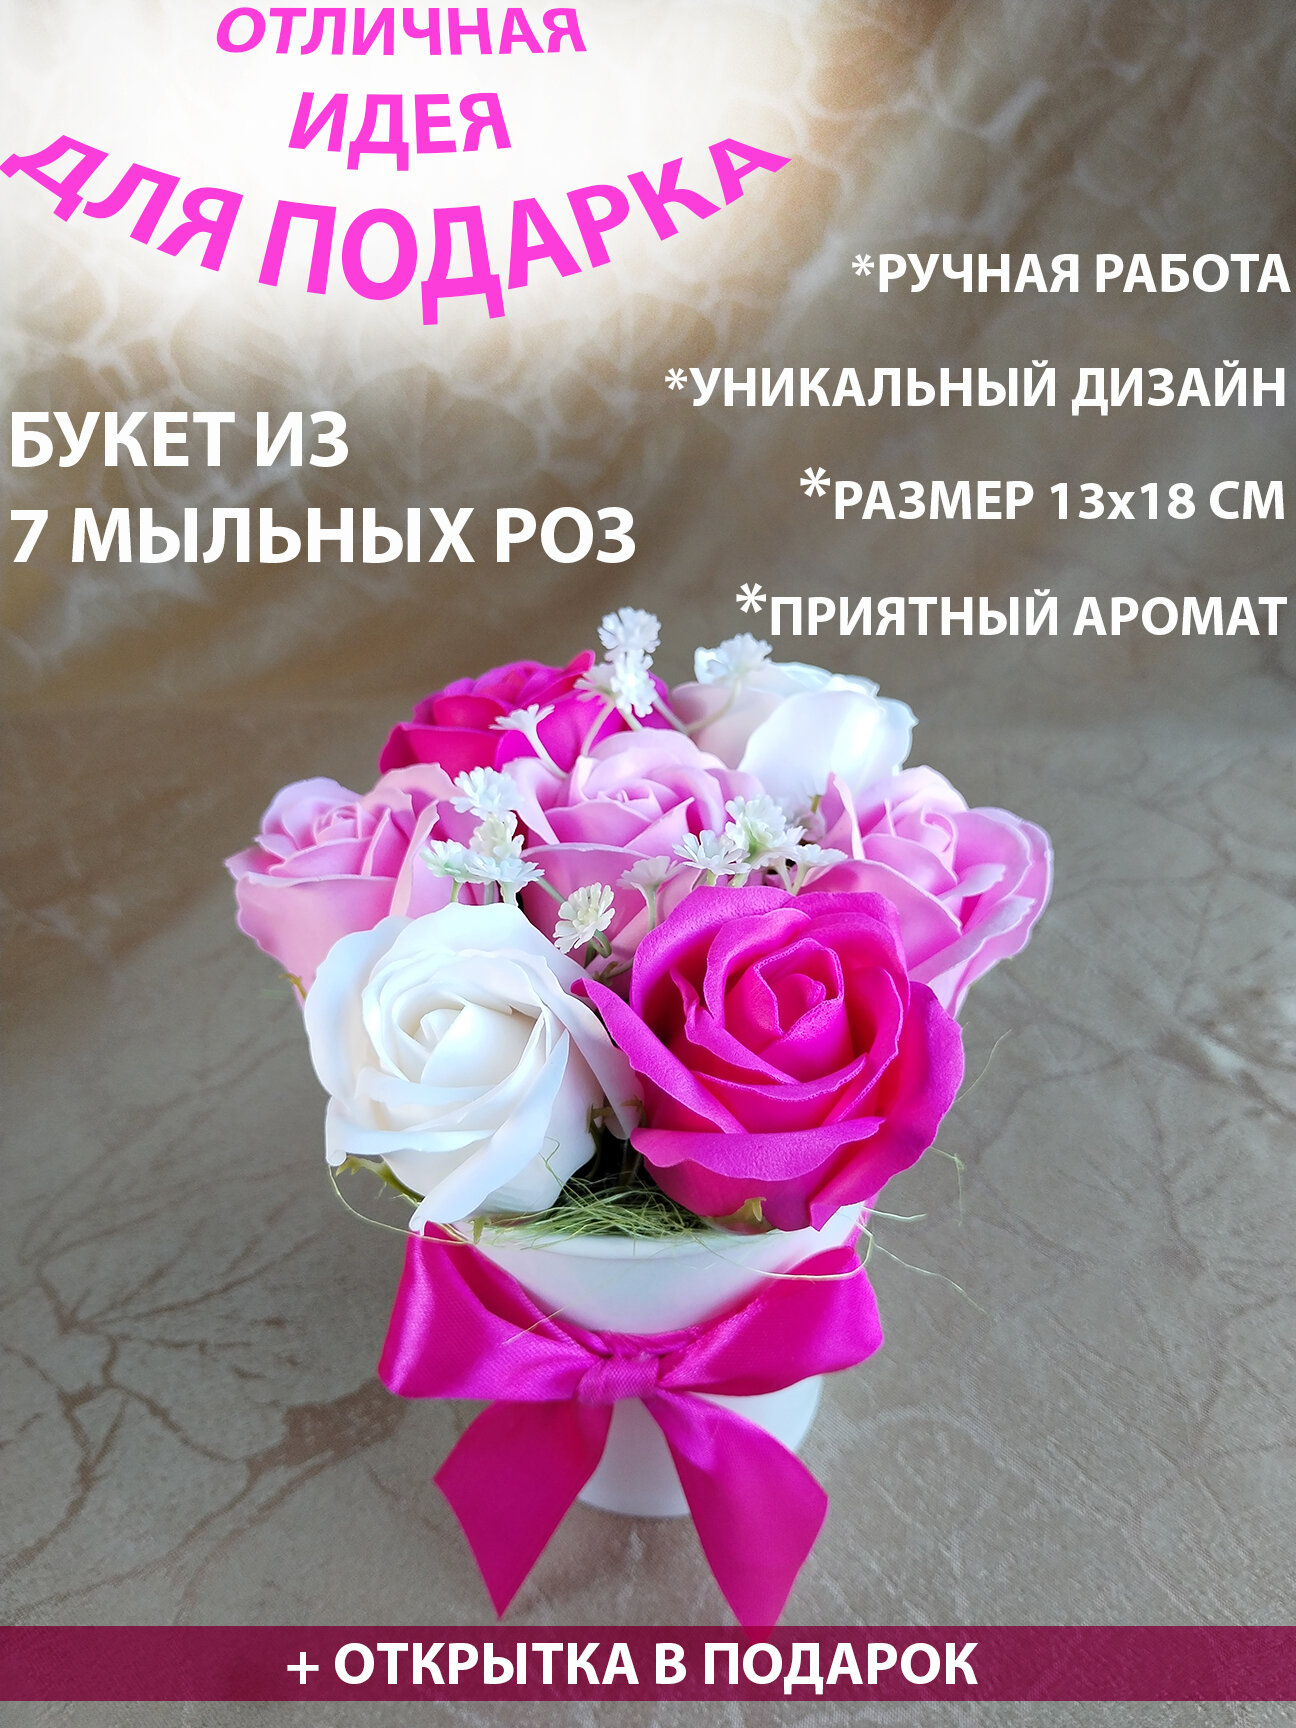 Композиция из мыльных роз. Подарок для мамы, подарок на день рождения, подарок на 8 марта